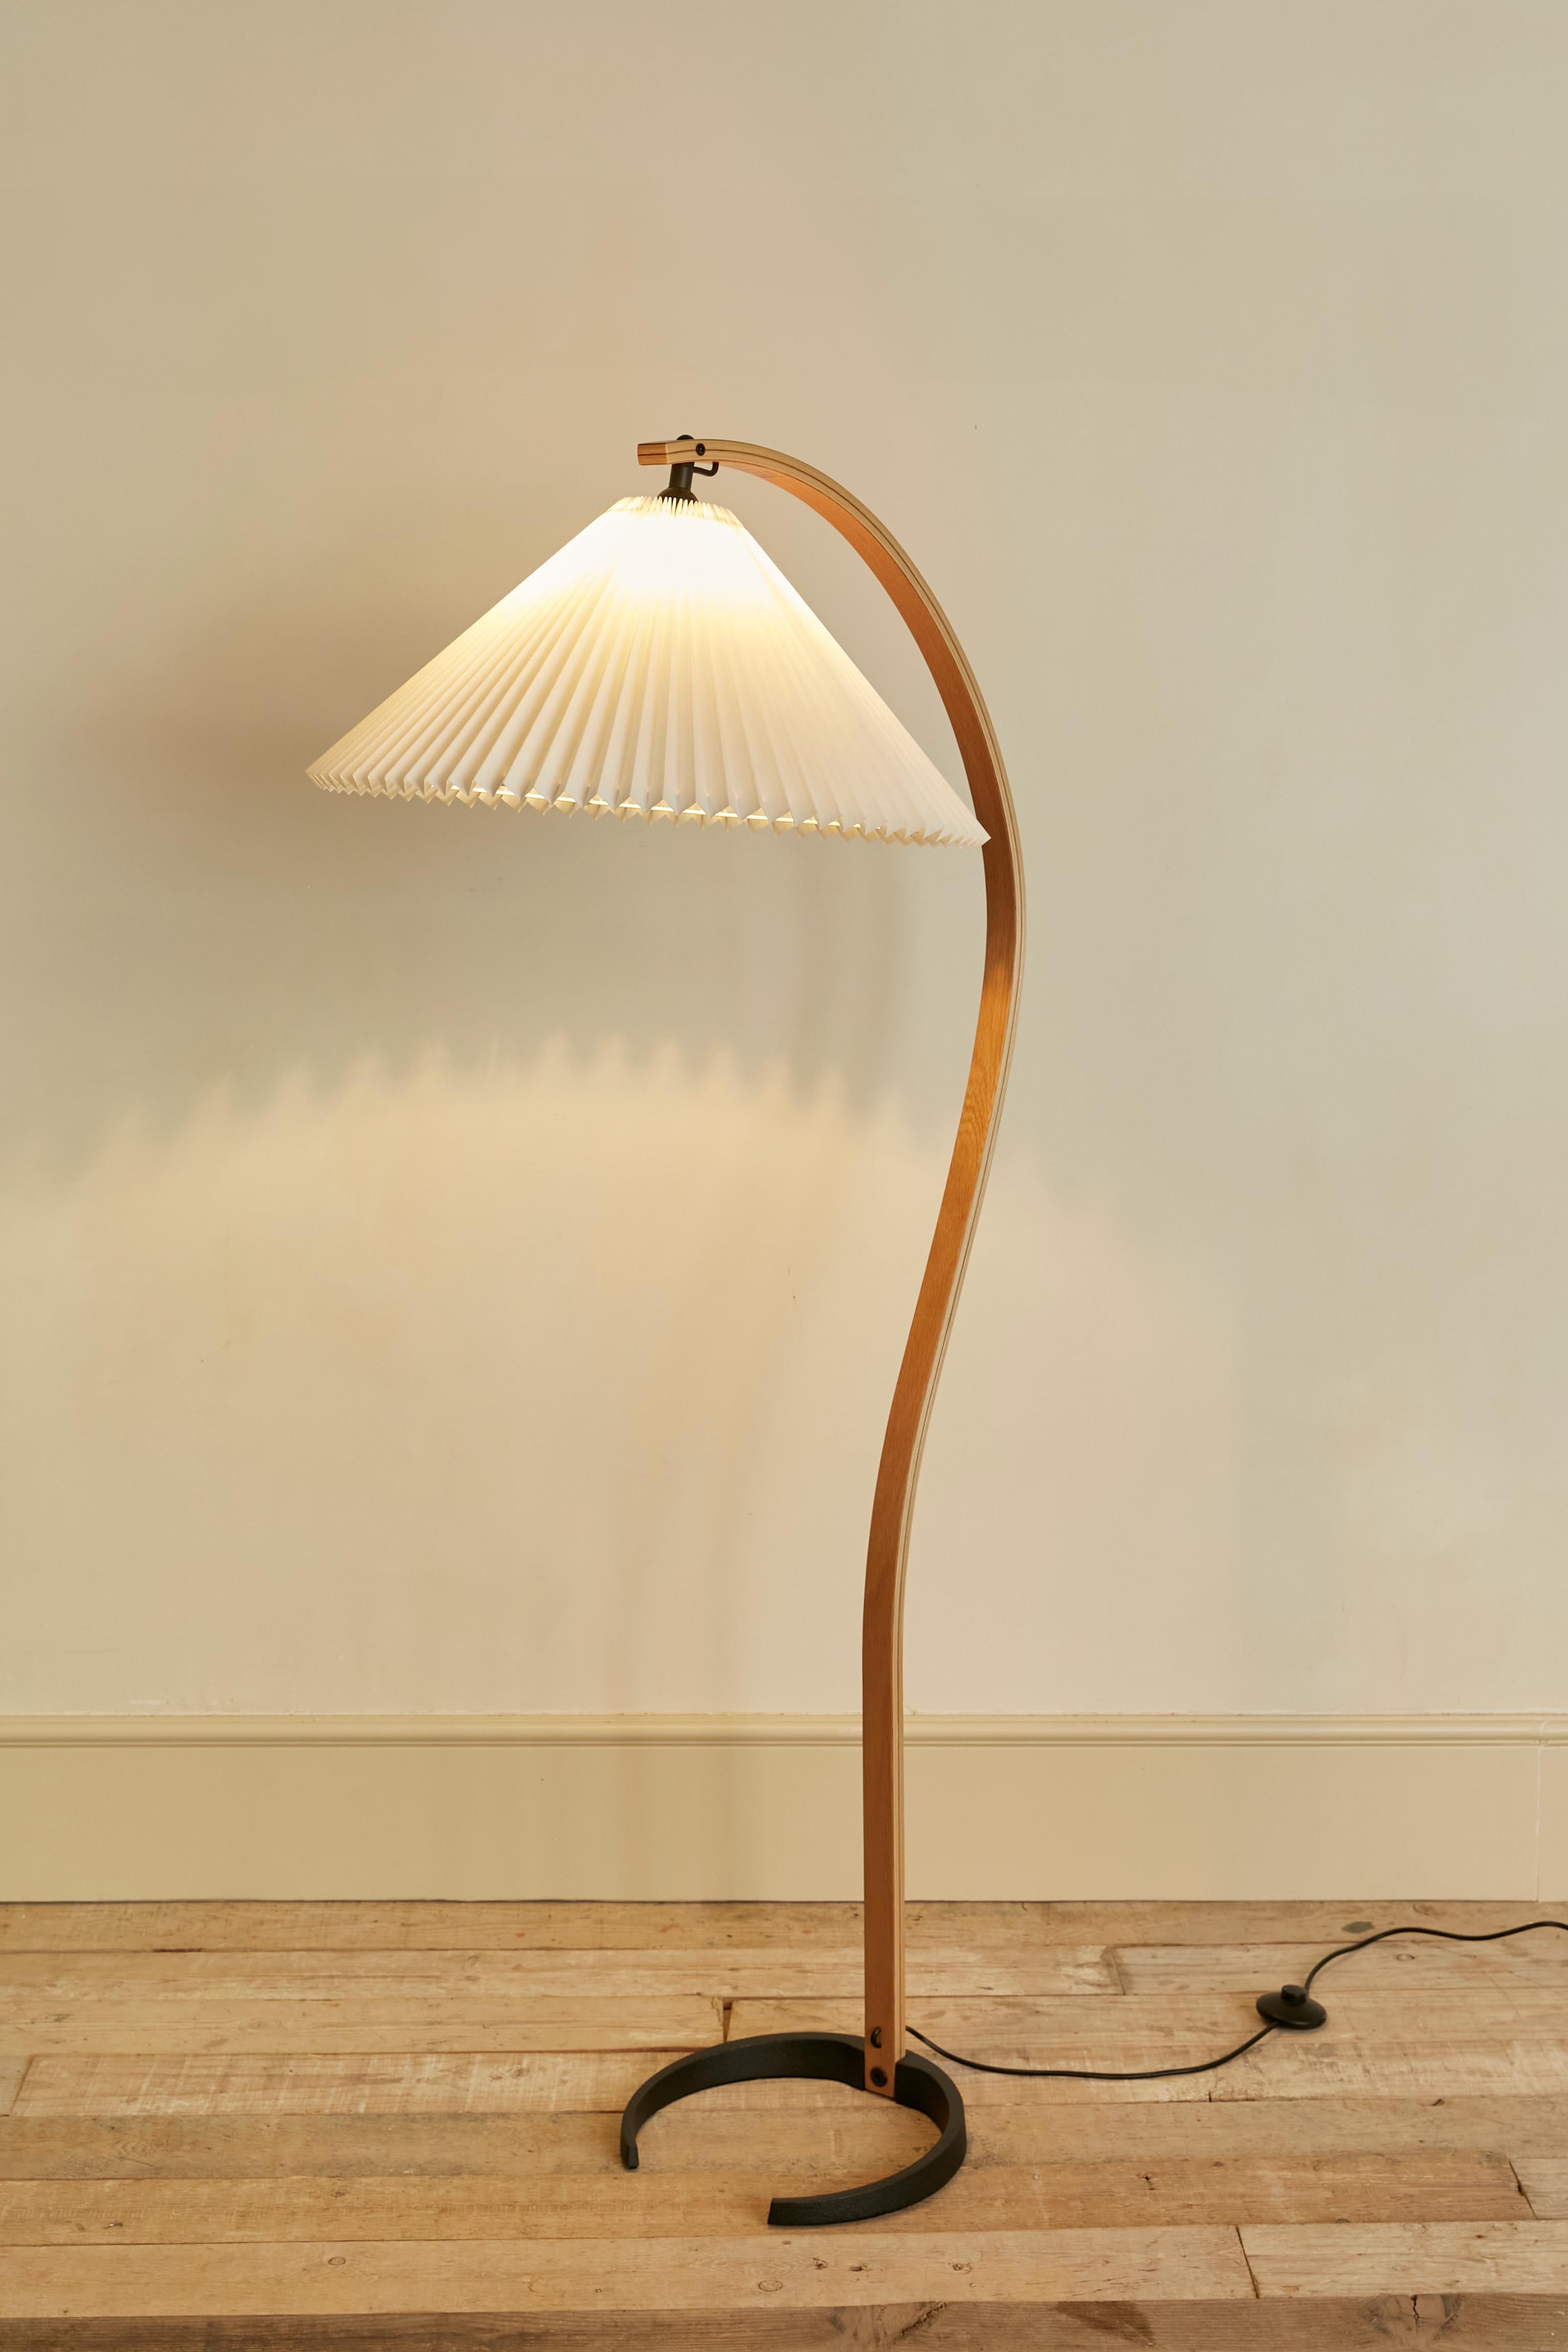 Le lampadaire Timberline est un élément sculptural. Conçue dans les années 1970 par Mads Caprani, elle est rapidement devenue une référence internationale. Le design soigné, comme la lanière encastrée et l'écran de direction réglable, montre